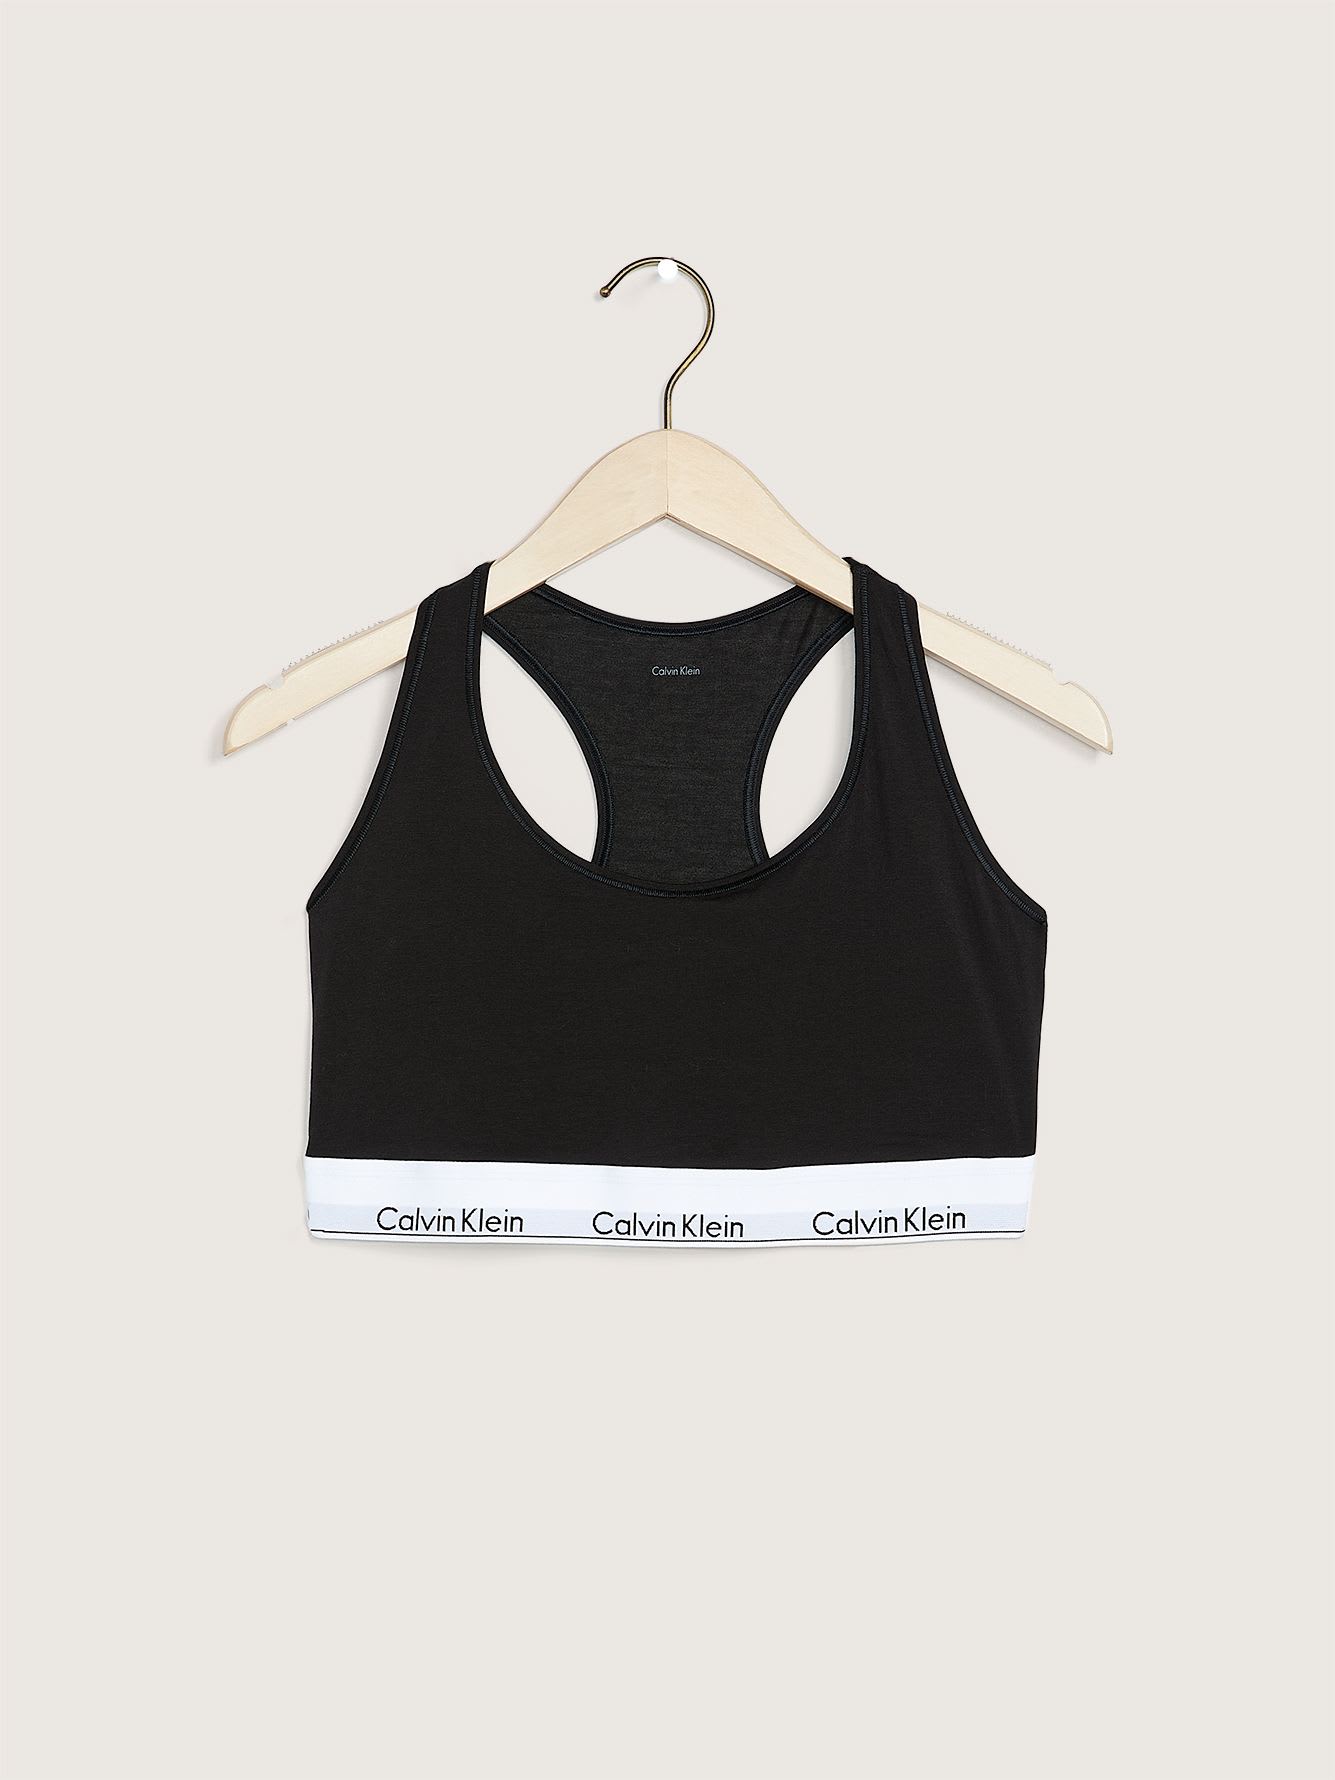 Unlined Cotton Bralette - Calvin Klein